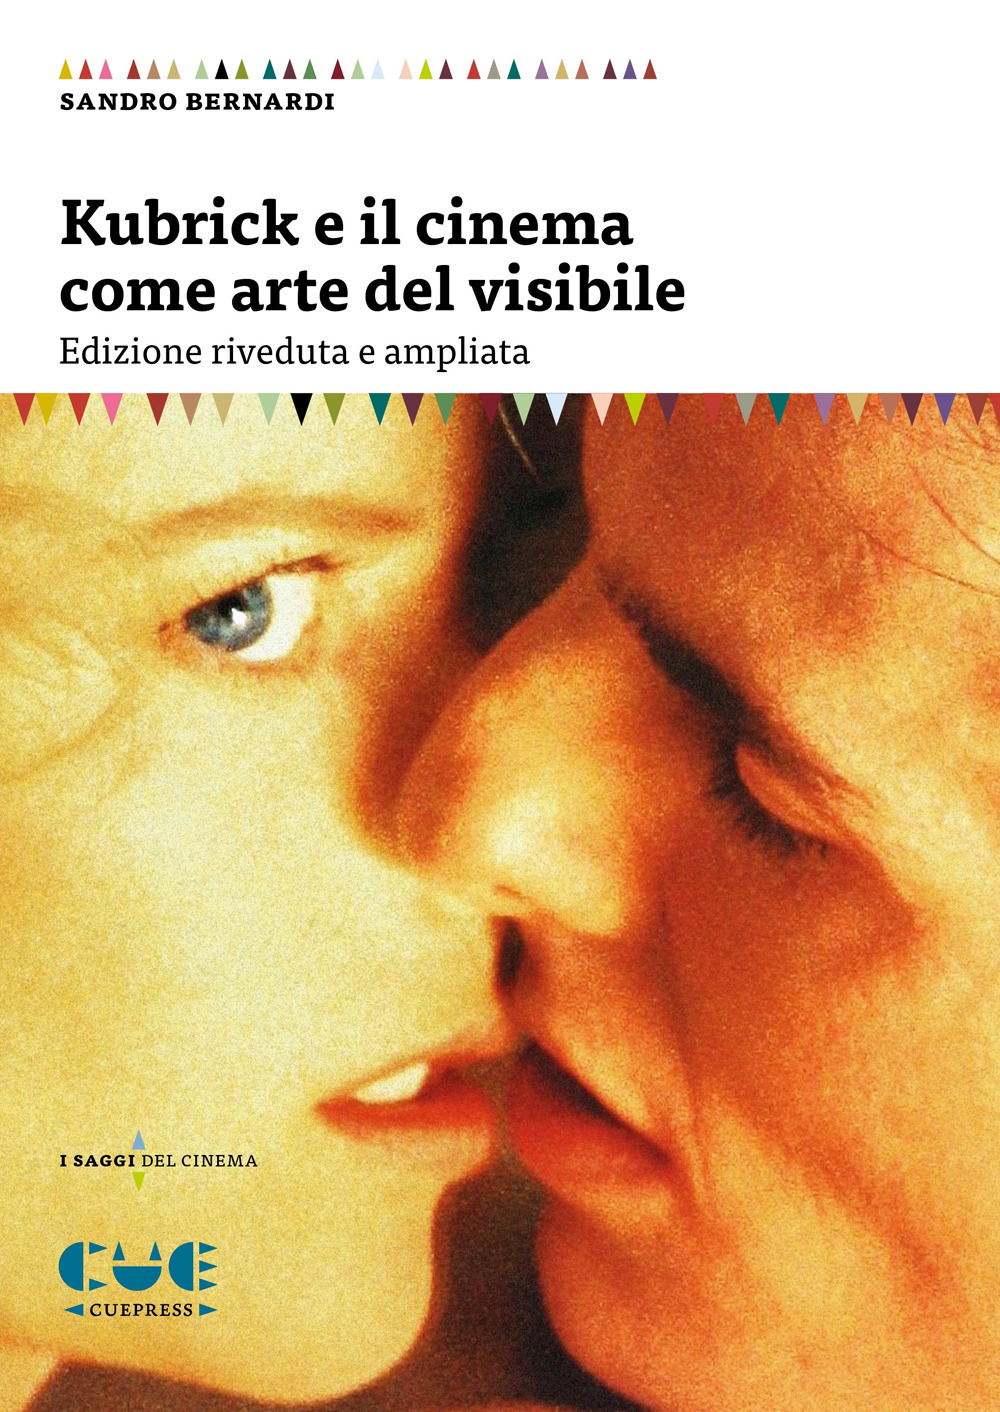 Libri Sandro Bernardi - Kubrick E Il Cinema Come Arte Del Visibile NUOVO SIGILLATO, EDIZIONE DEL 19/11/2020 SUBITO DISPONIBILE